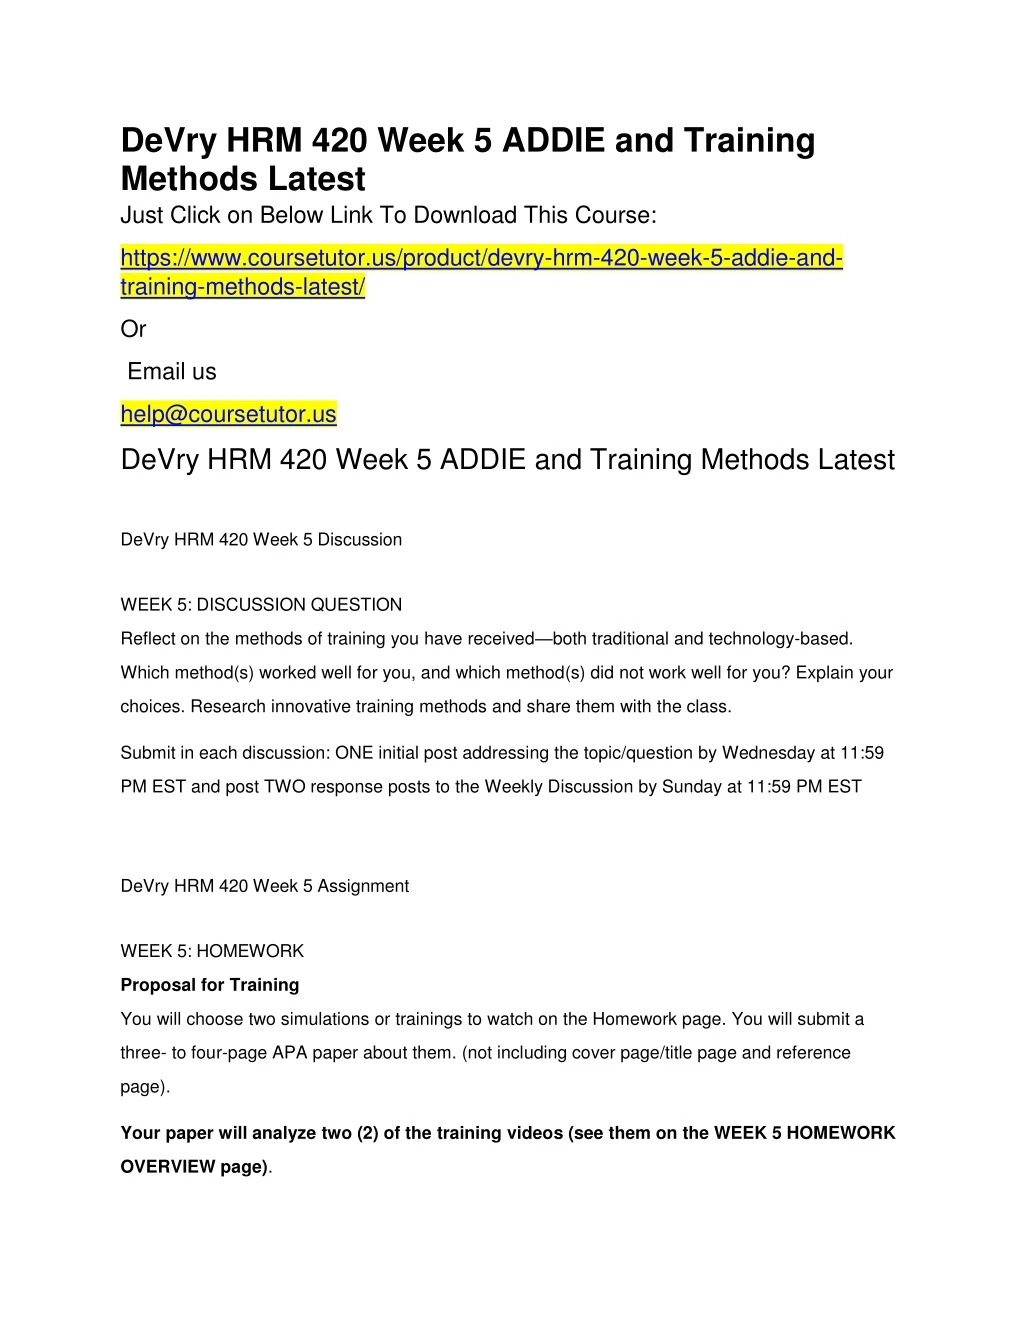 devry hrm 420 week 5 addie and training methods